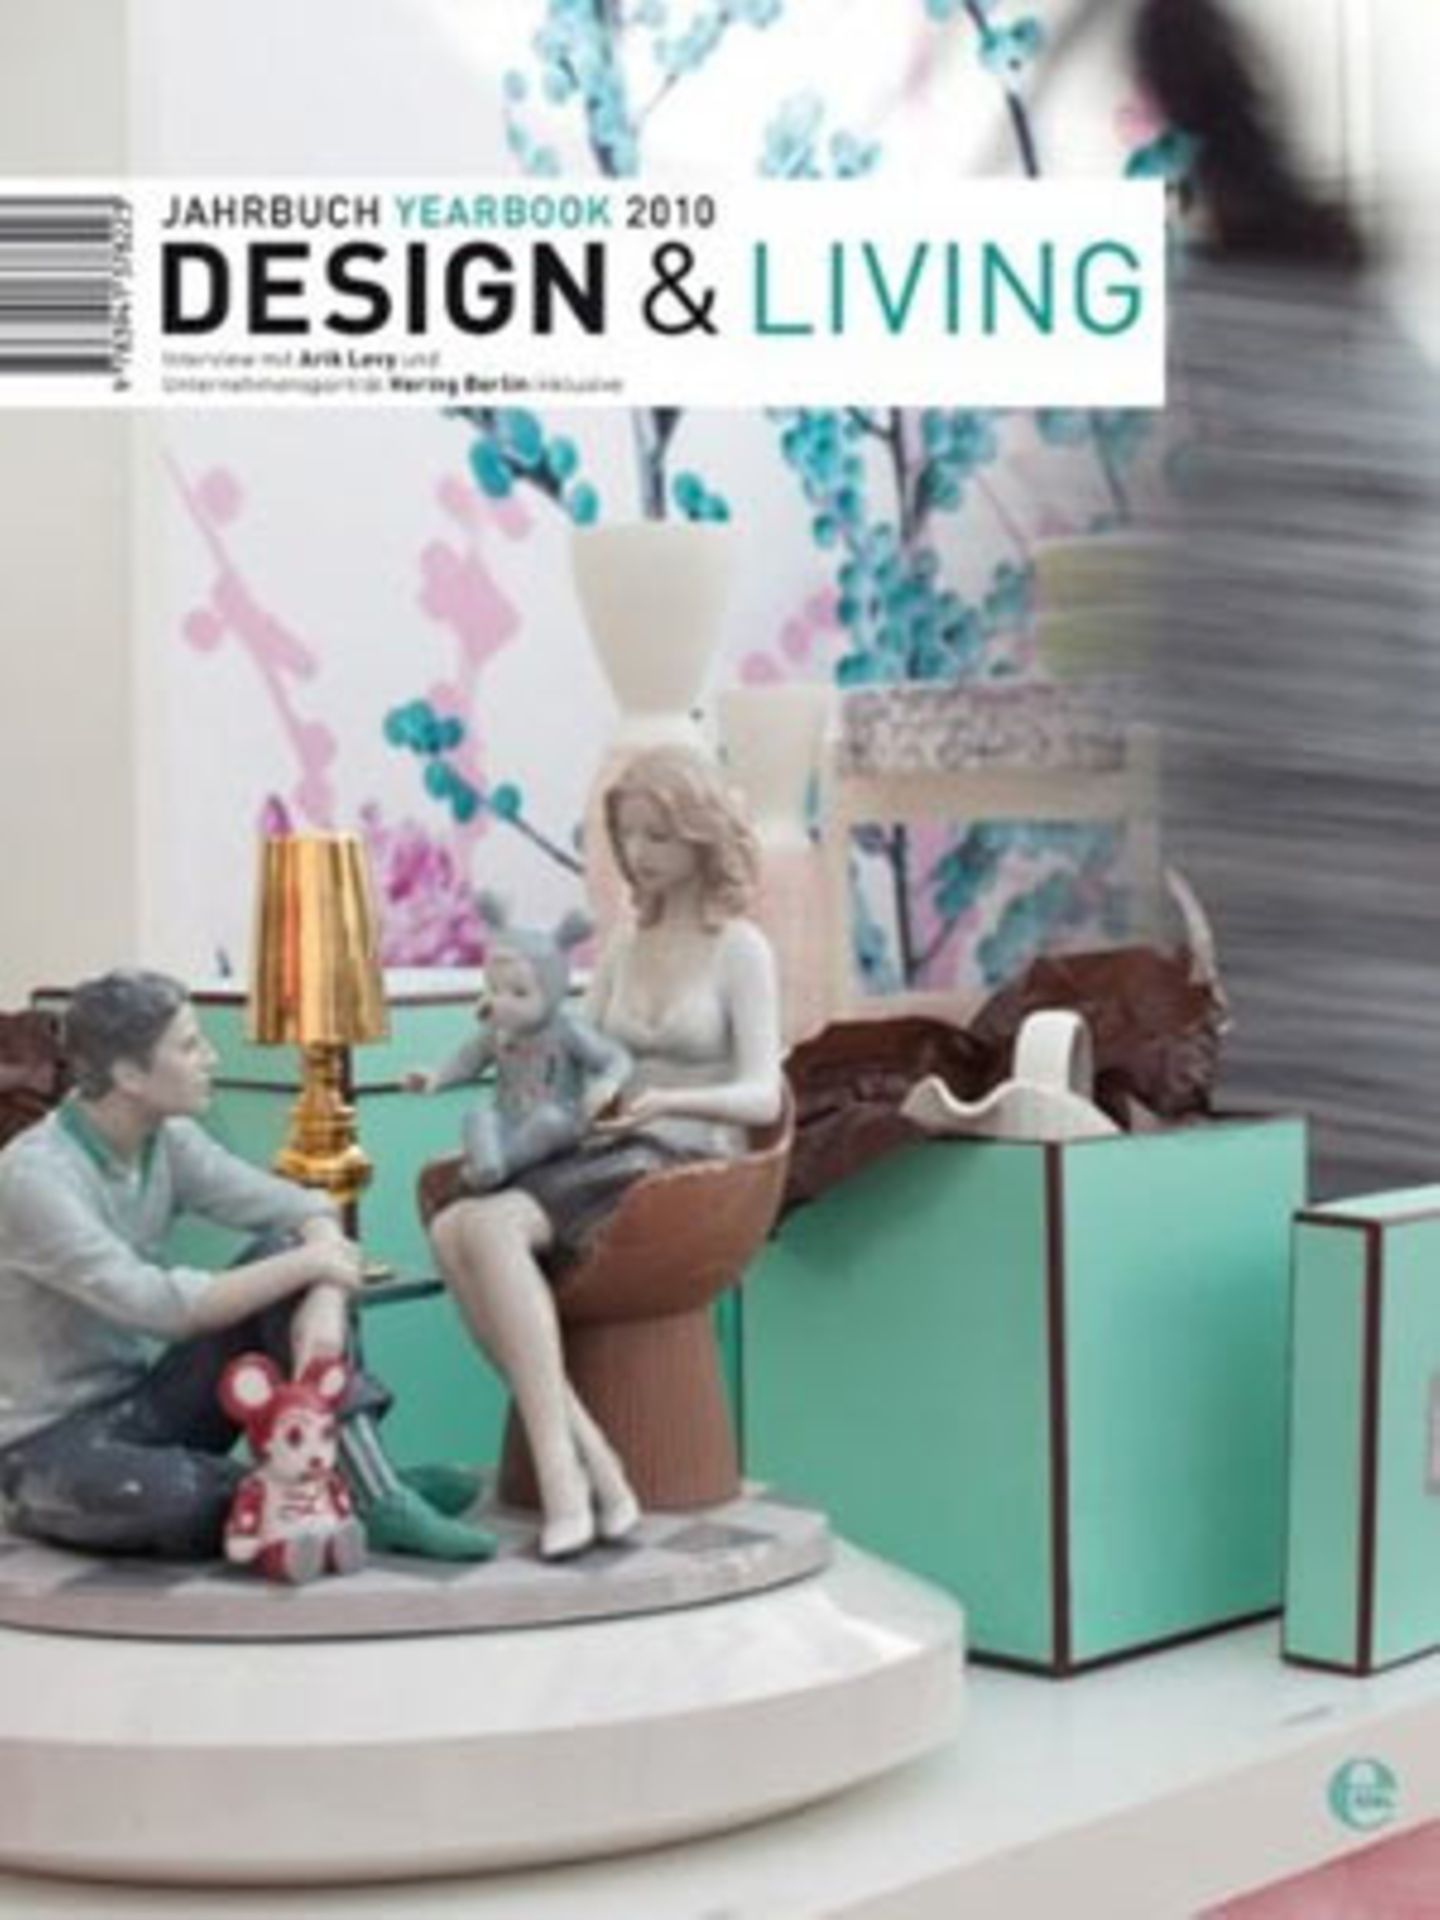 Zum Durchblättern und Inspirationen finden: Das Jahrbuch "Design & Living" präsentiert außergewöhnliche Designideen für unser Zuhause. Von Edel, um 40 Euro.